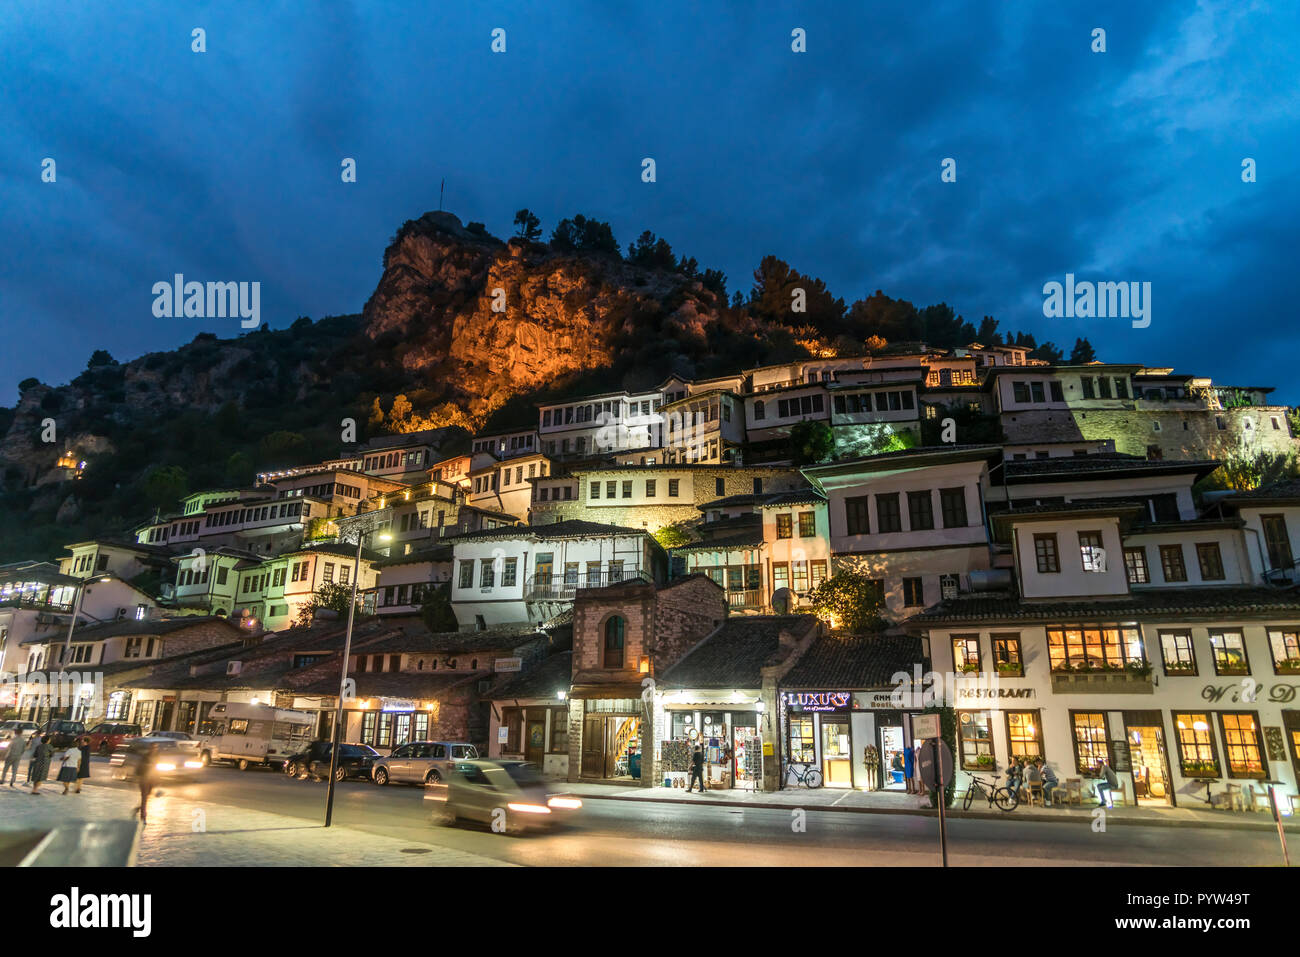 Osmanische Architektur der Altstadt im Stadtteil Mangalem in der Abenddämmerung, darüber die Burg, Berat, Albanien, Europa | osmanische Architektur von Stockfoto